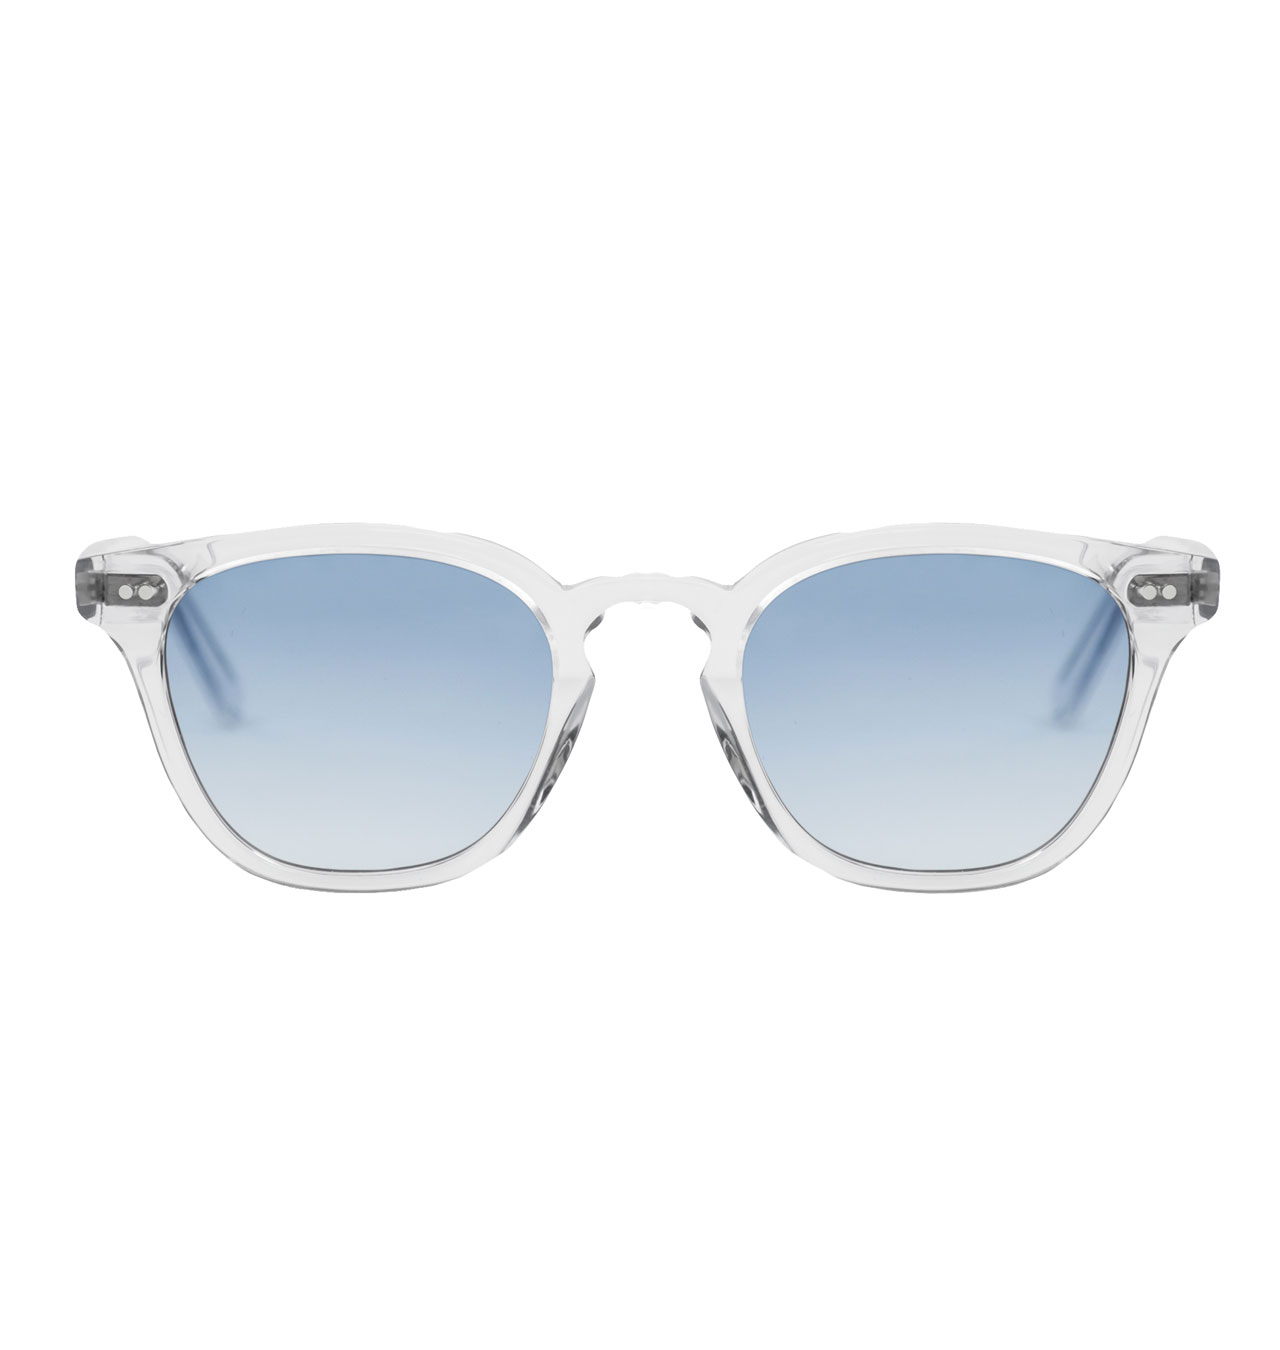 Monokel Eyewear - River Crystal Sunglasses - Gradient Blue Lens